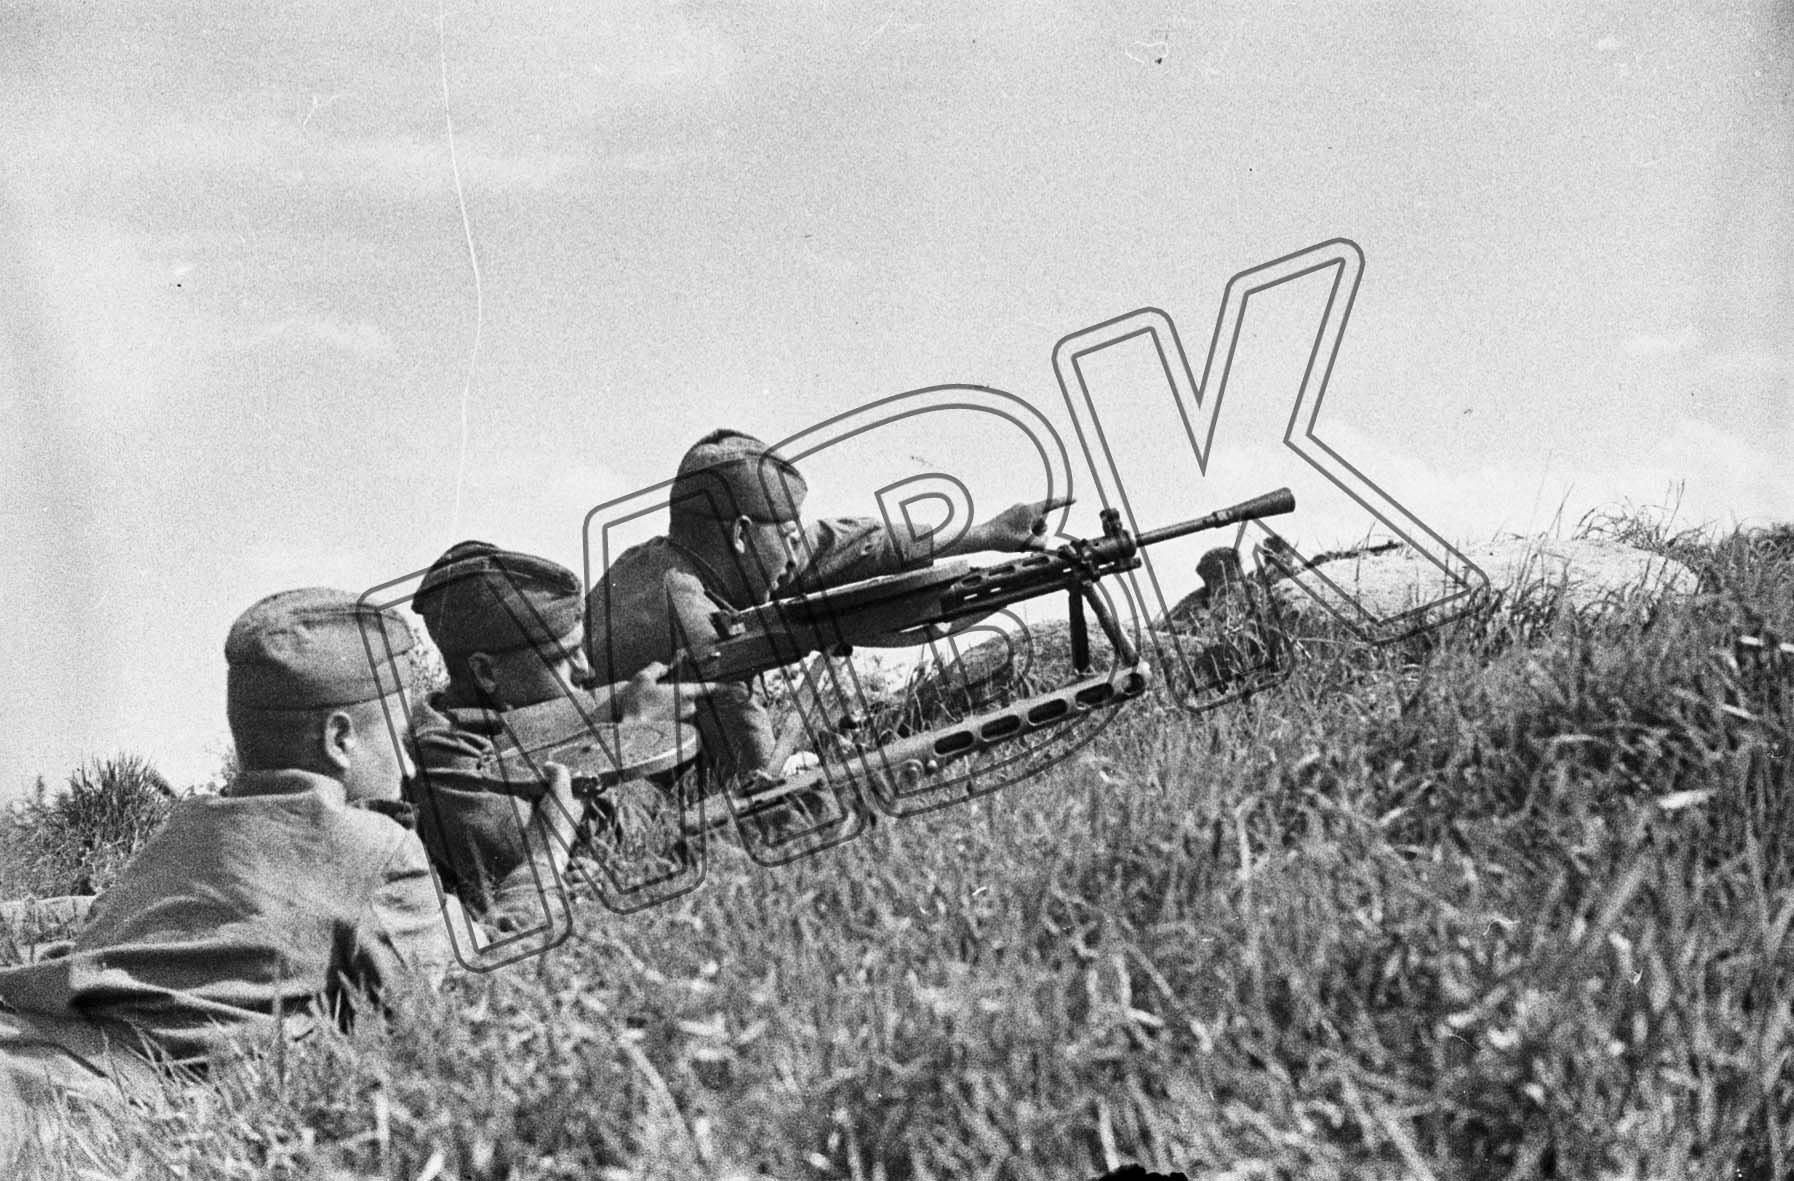 Fotografie: Maschinengewehrschützen in Gefechtsstellung, Ort unbekannt, 8. Juni 1942 (Museum Berlin-Karlshorst RR-P)